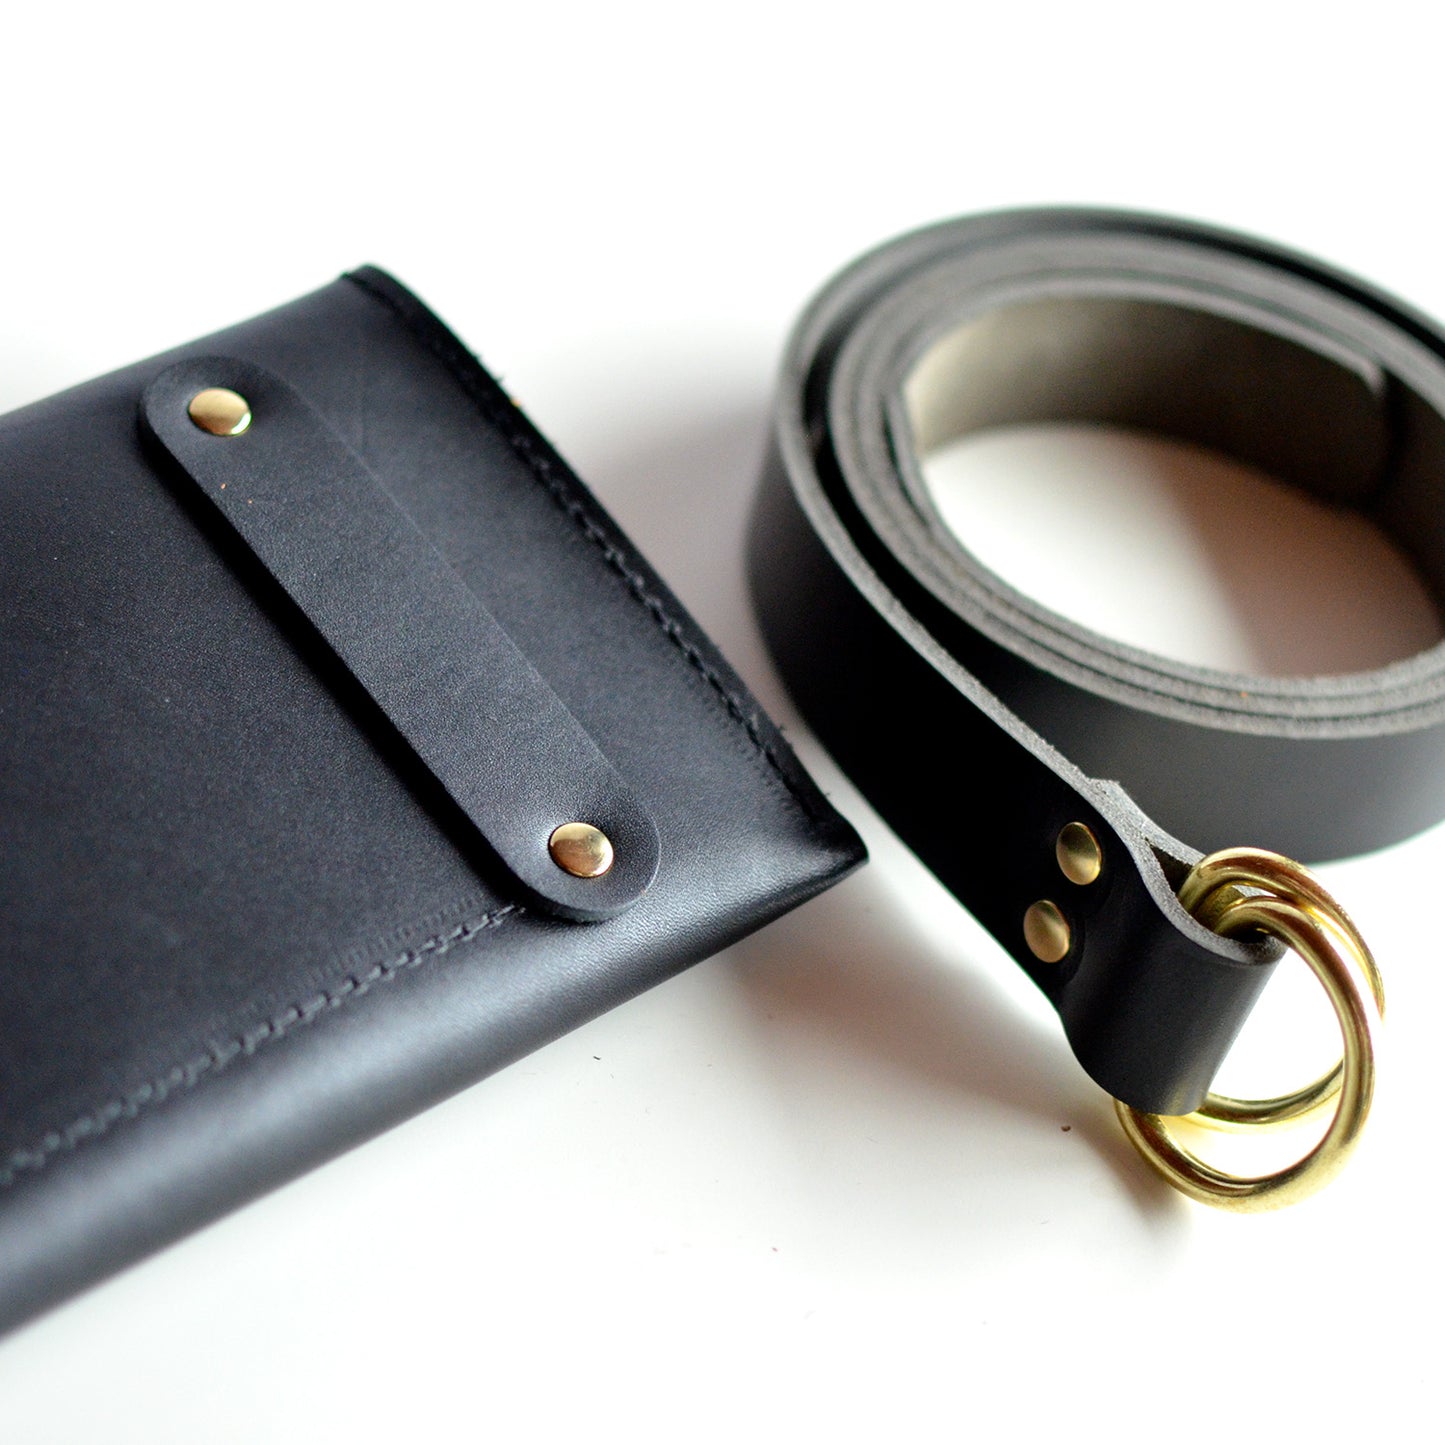 Hipster Belt Strap - Black Leather